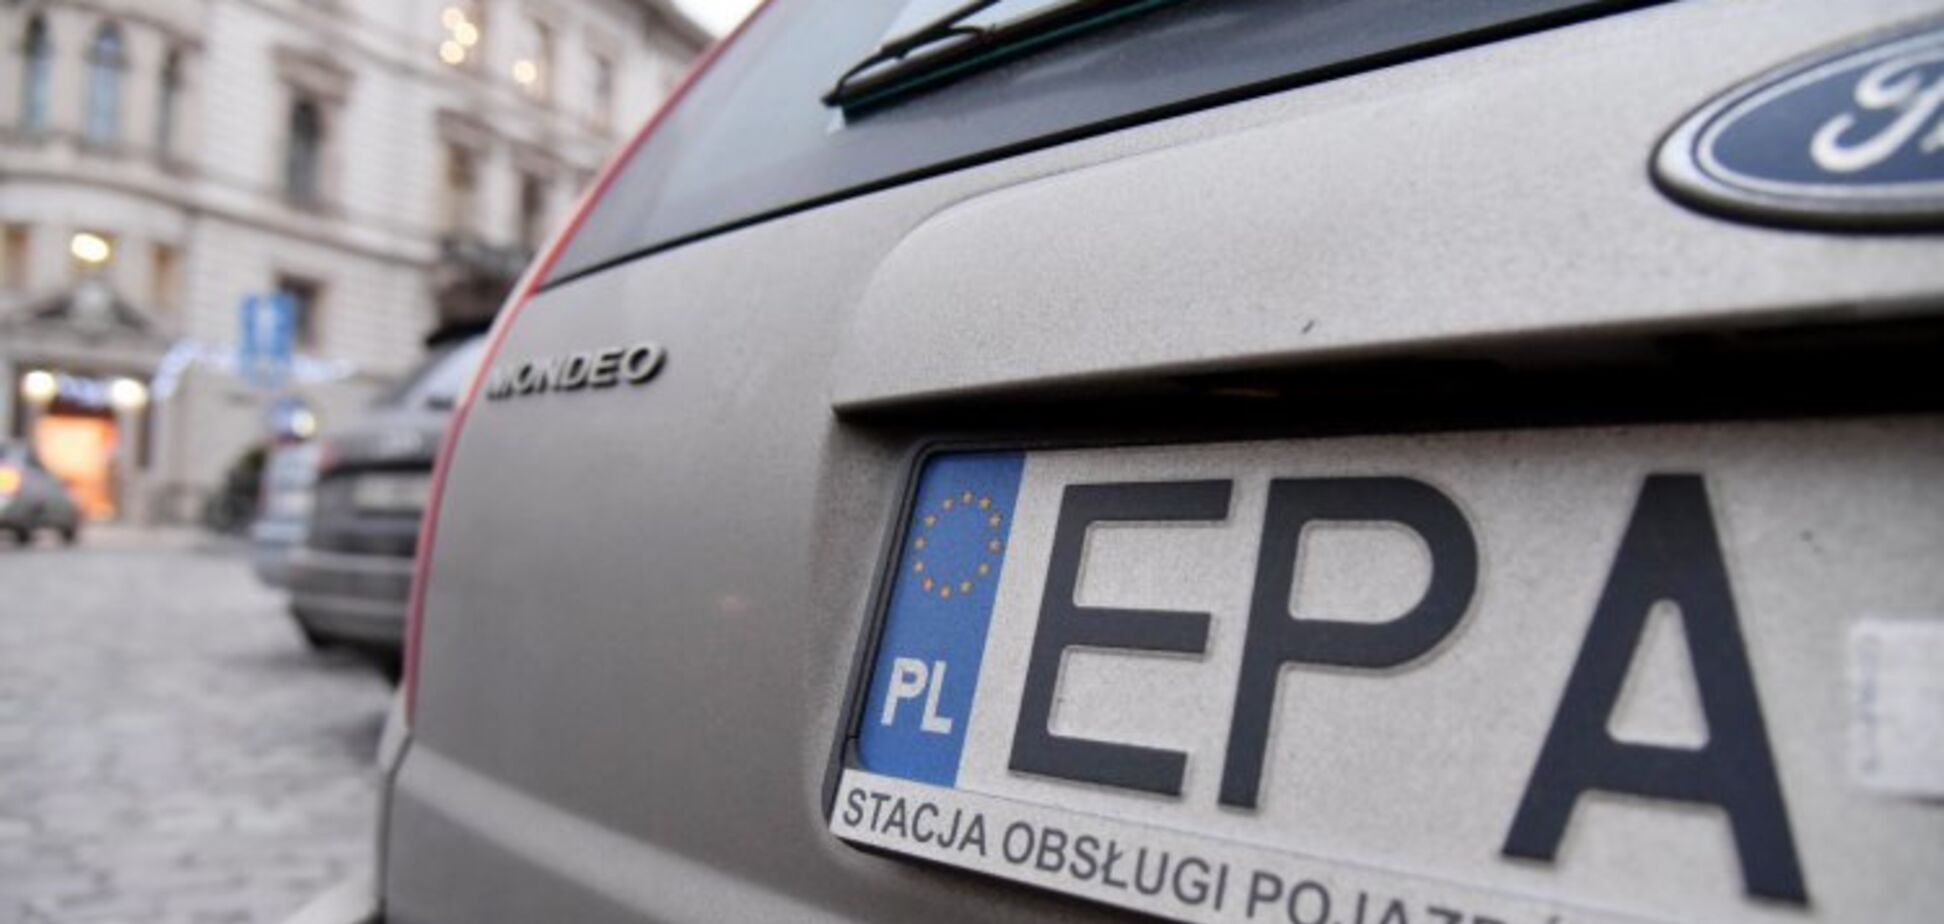 Авто на еврономерах: активисты добиваются справедливых условий для всех украинцев